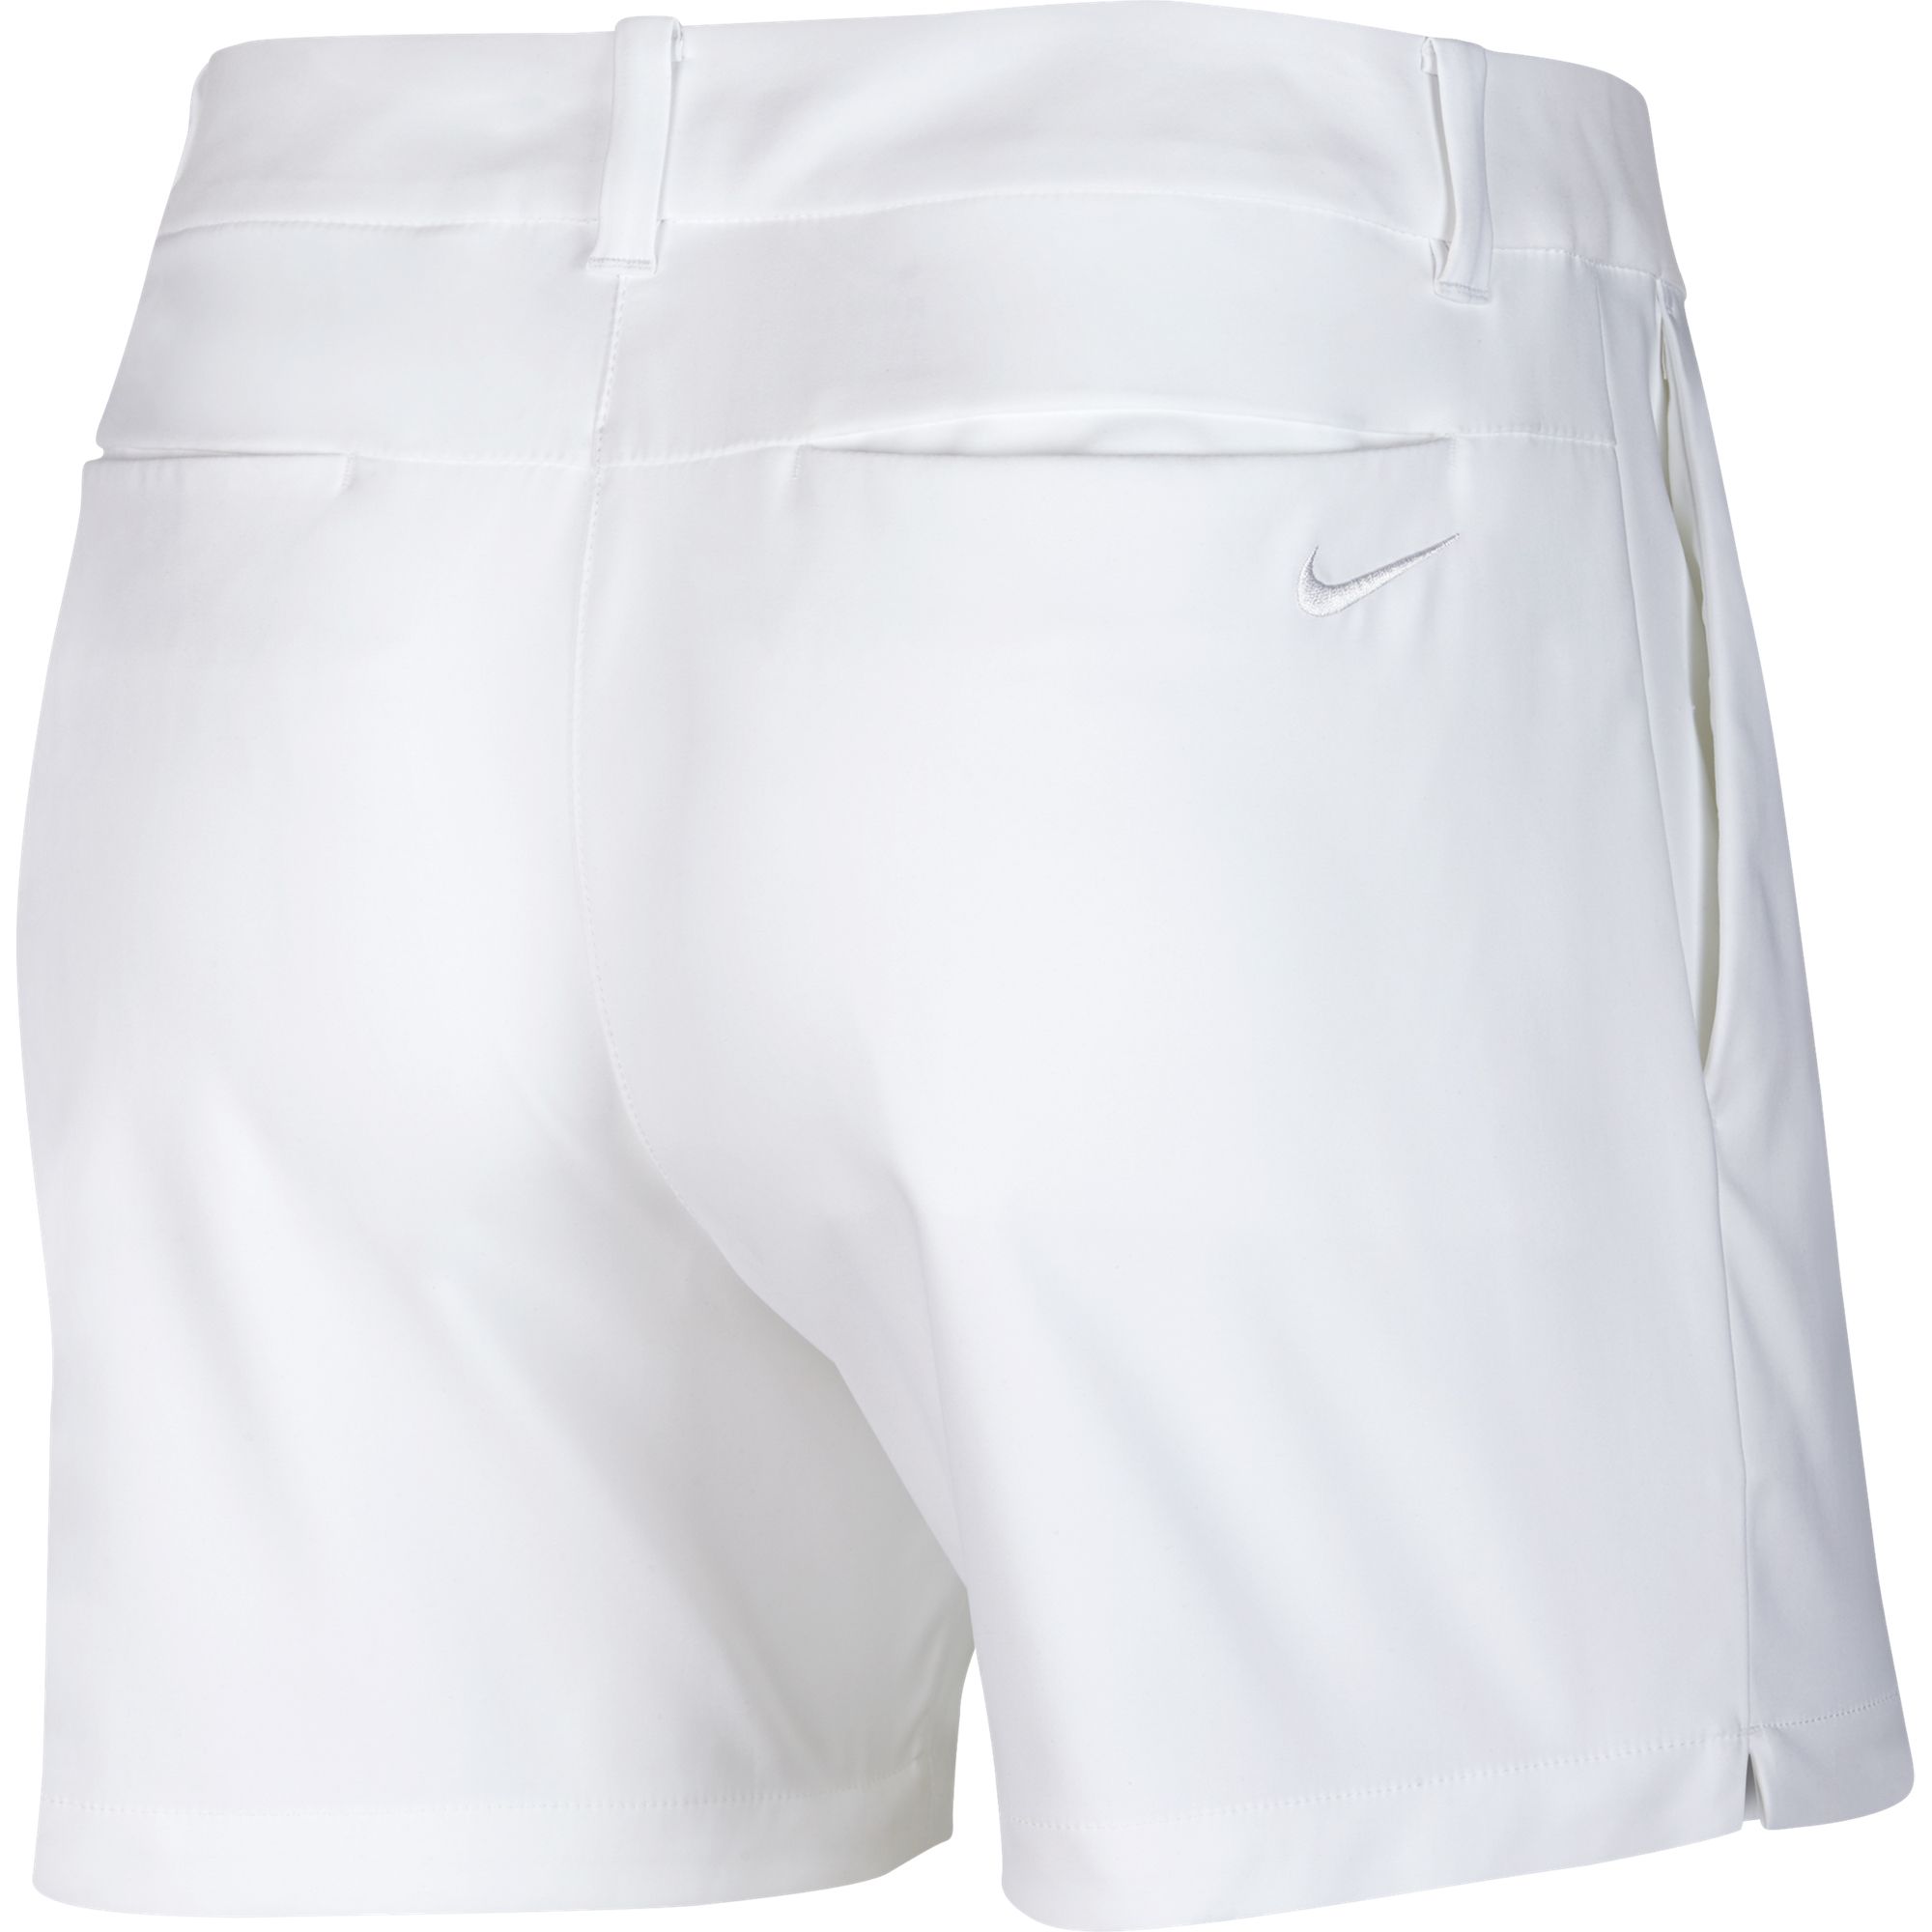 nike women's 4.5 golf shorts